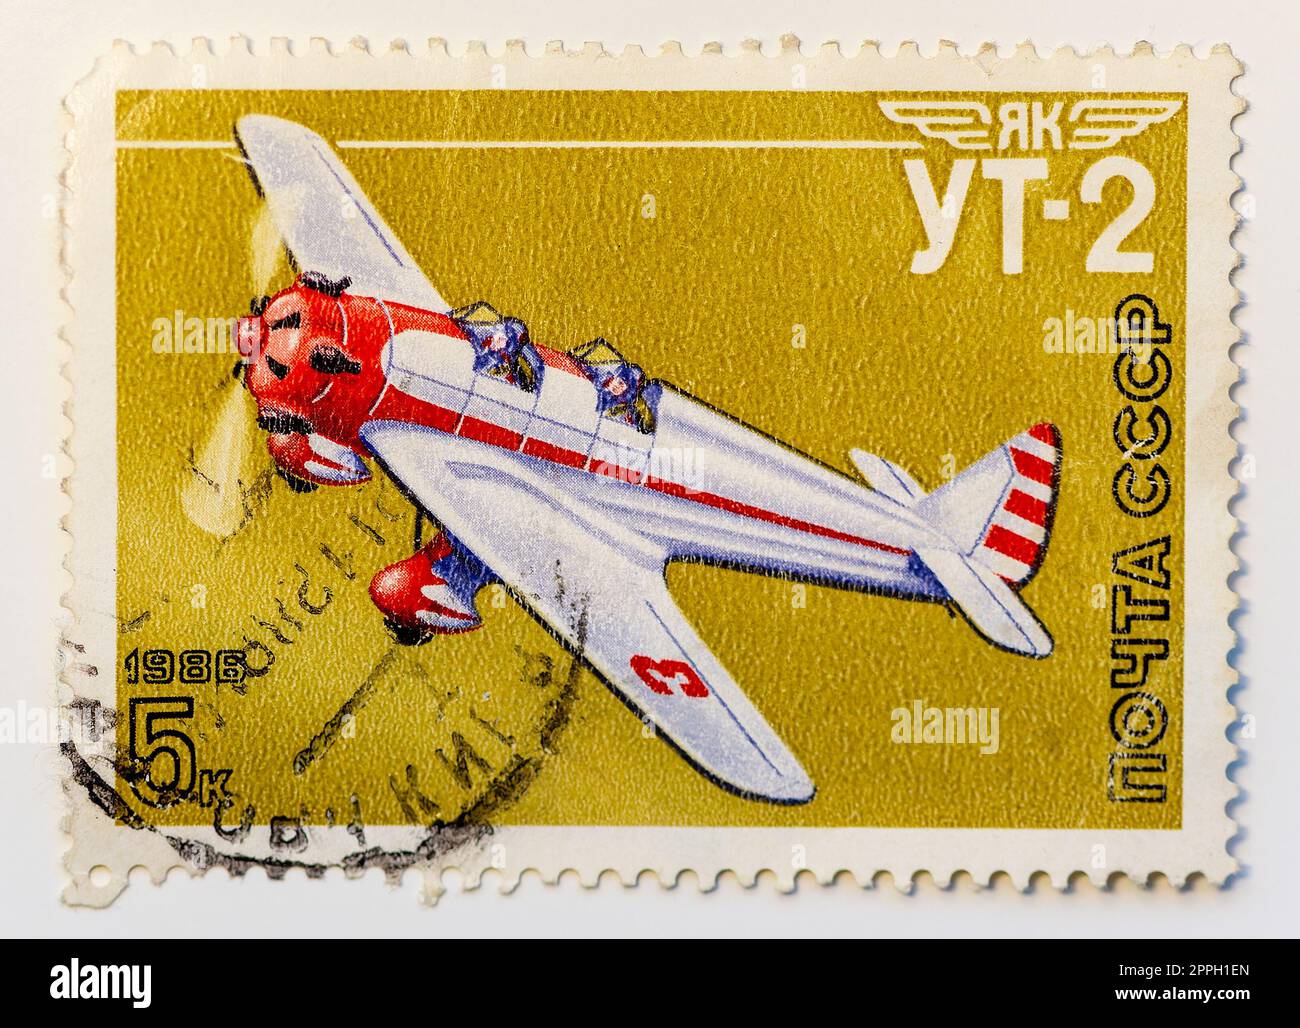 URSS - CIRCA 1986: Il francobollo 5 copeck mostra Yakovlev UT-2 Mink, monomotore biposto monoplano ad ala bassa, addestratore sovietico durante la grande Guerra Patriottica. Stampati i francobolli della serie dell'aeronautica militare sovietica. Foto Stock